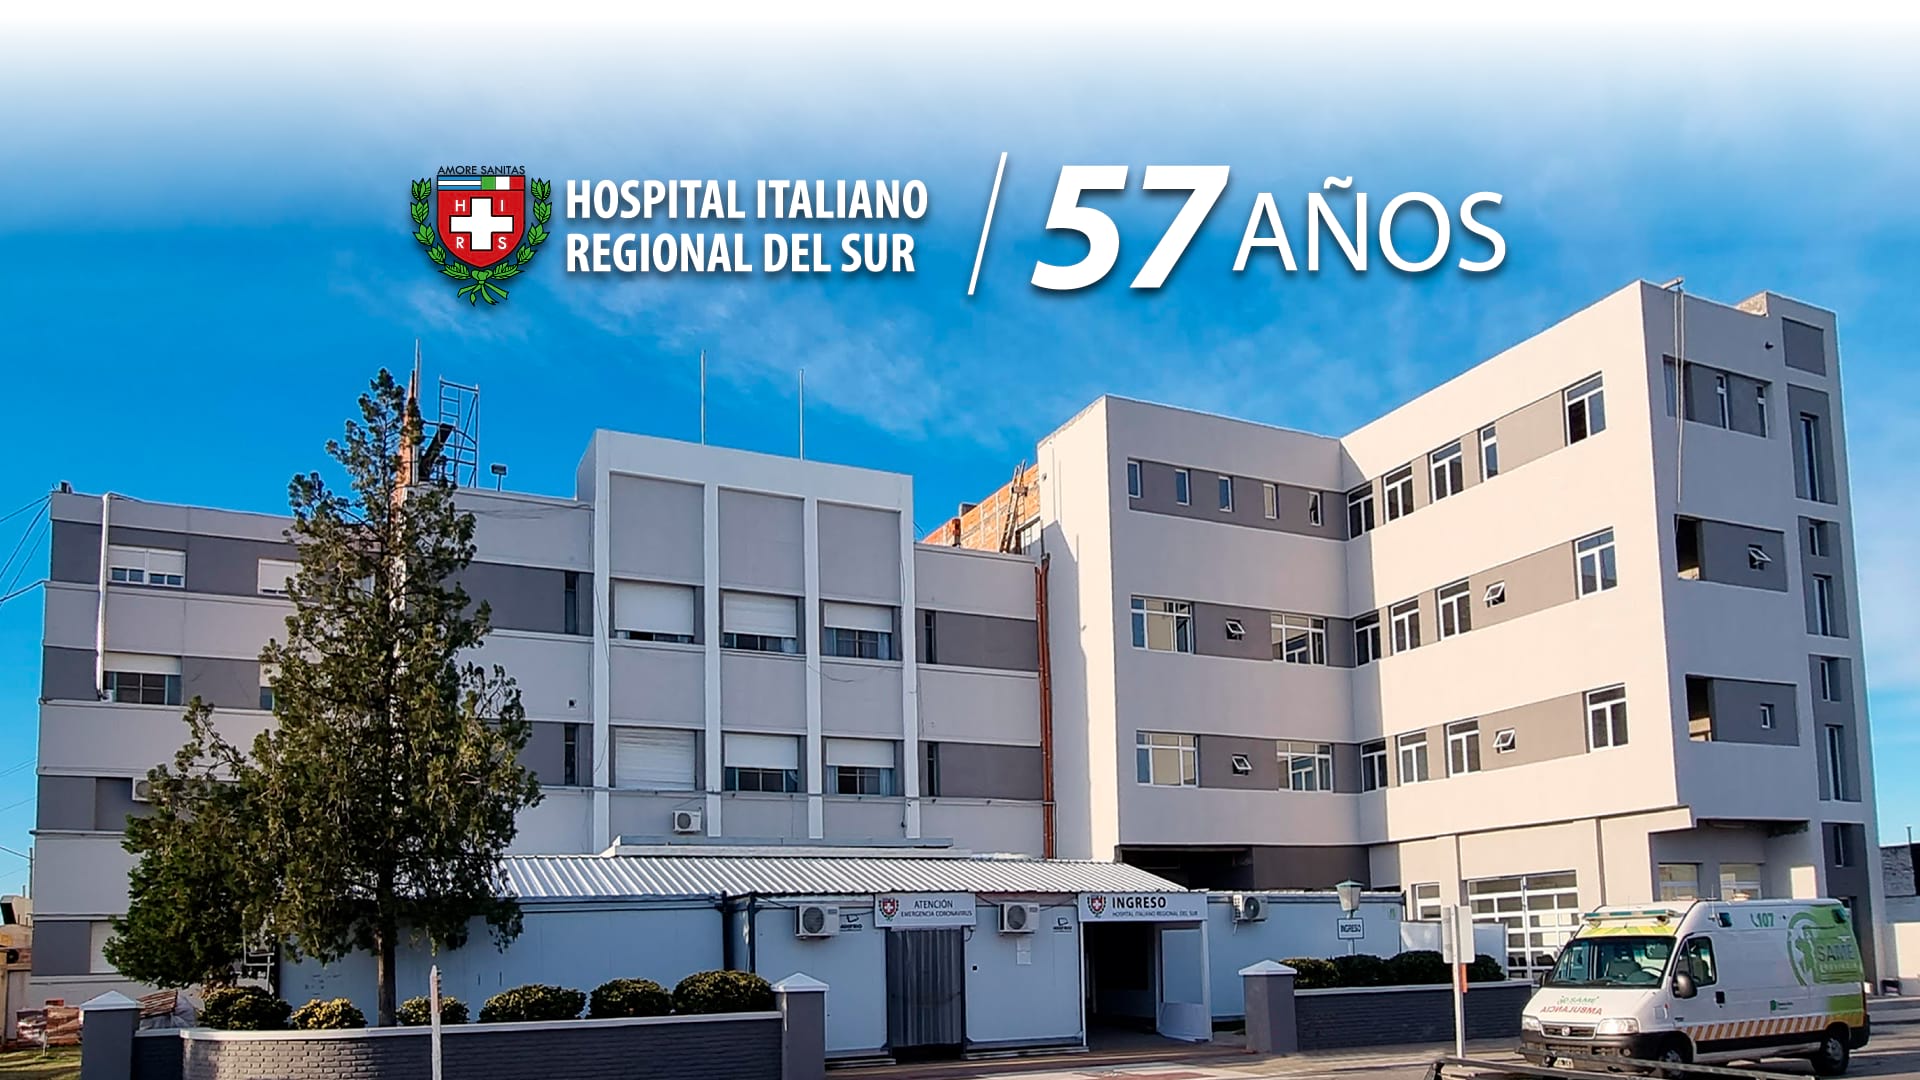 Aniversario 2020 - Hospital Italiano Regional del Sur